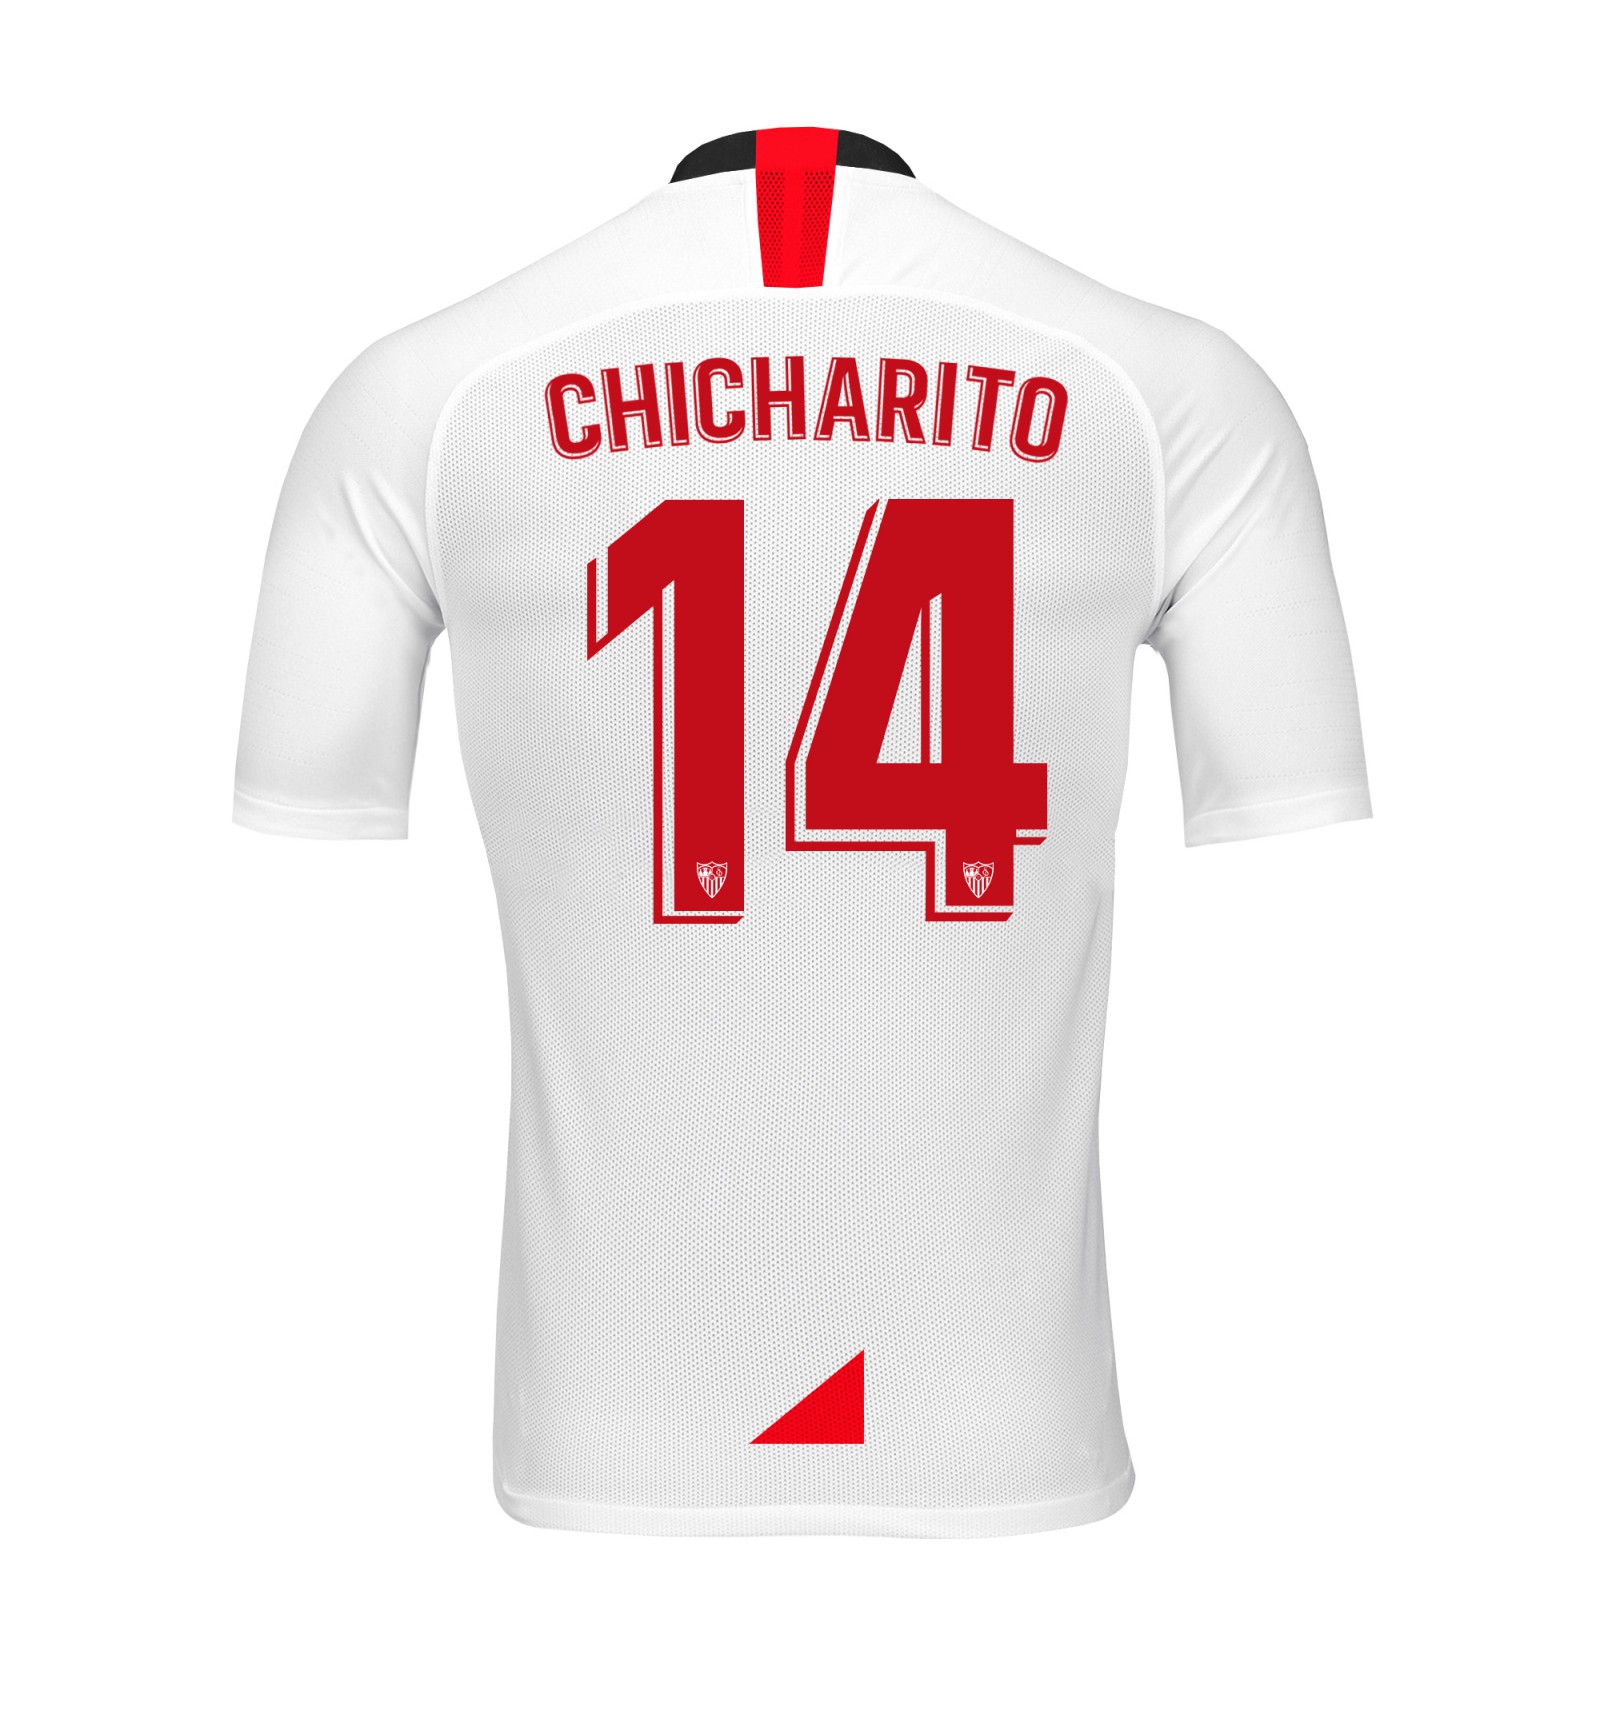 Chicharito | Sevilla F.C.